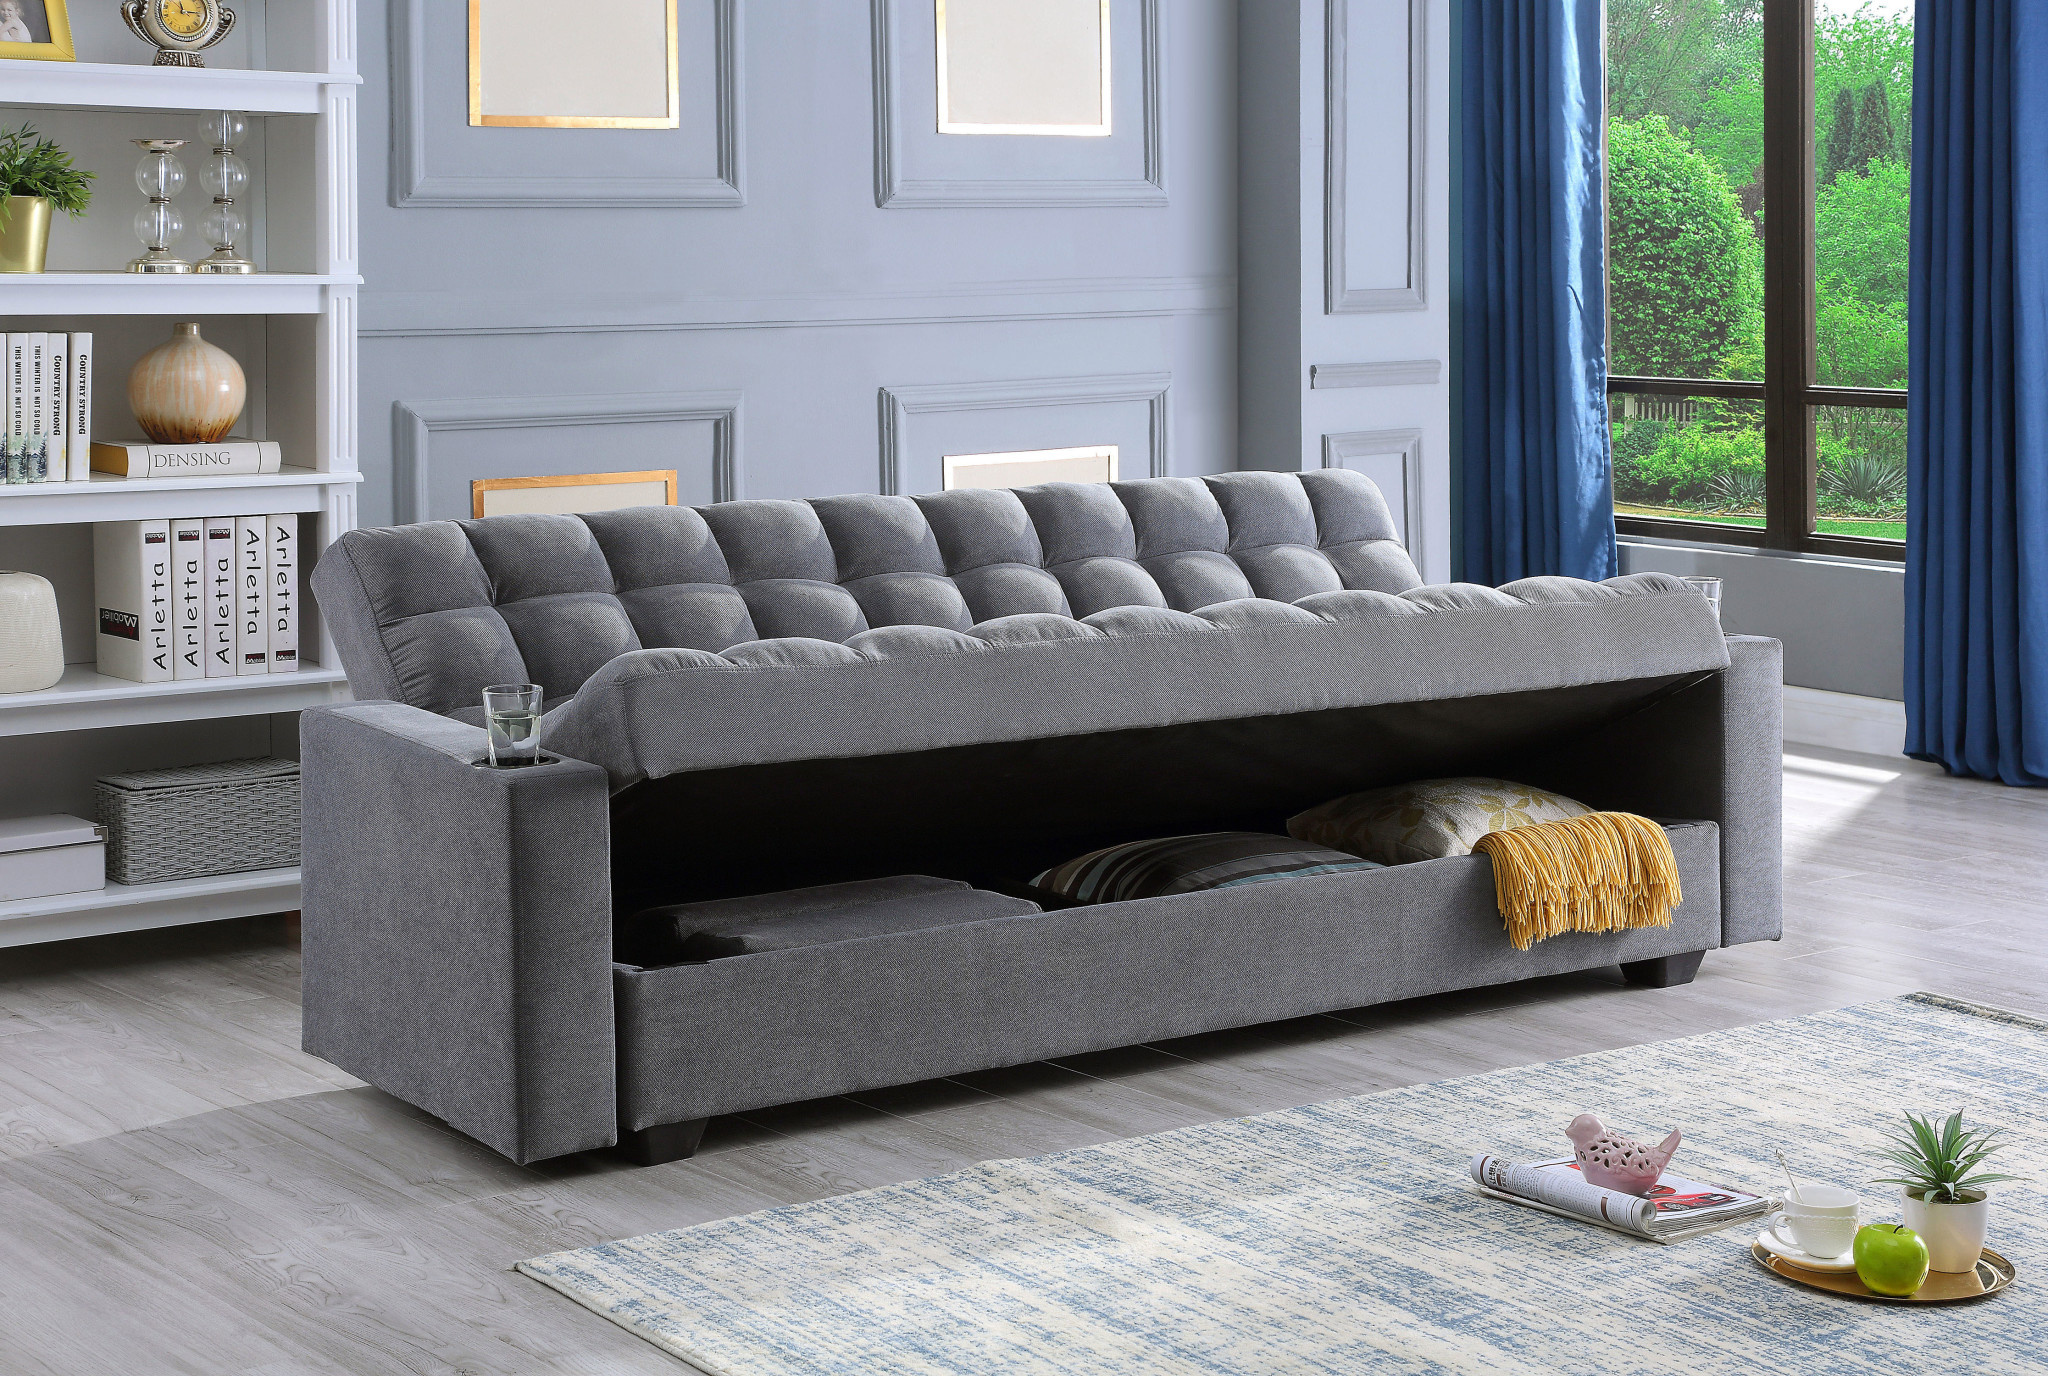 klik klak sofa bed with storage